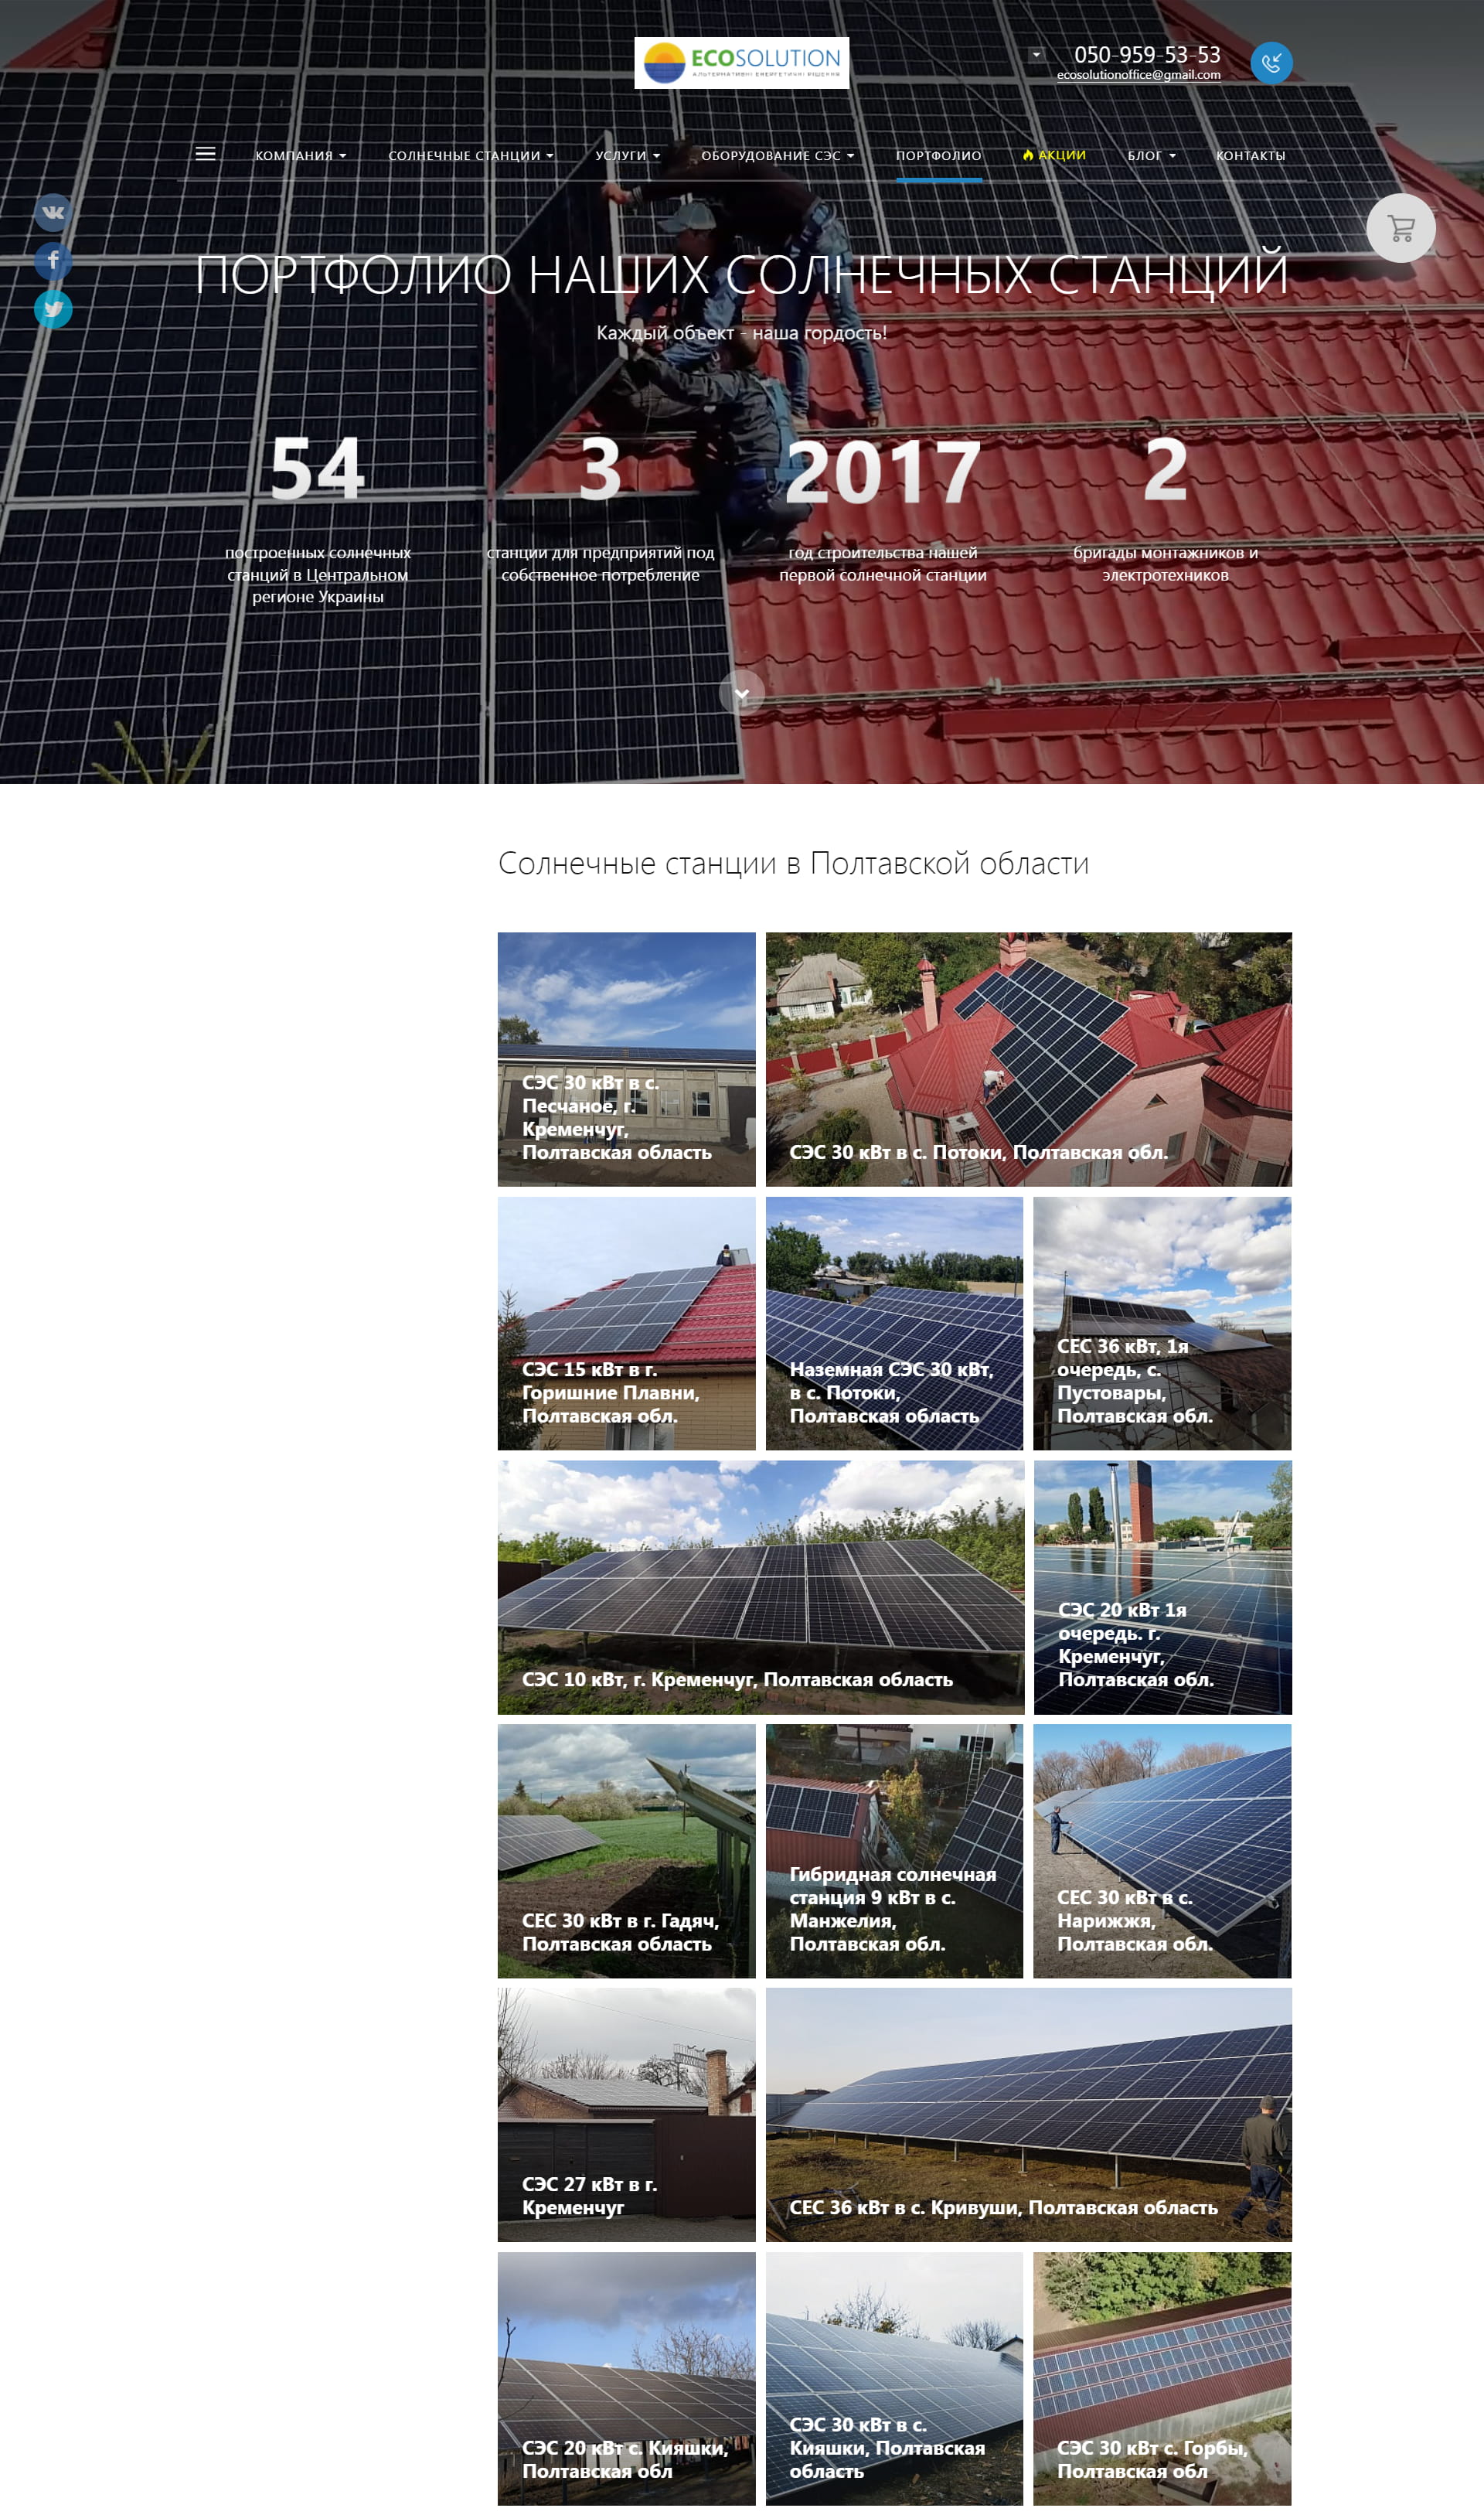 Ecosolution - солнечные станции "под ключ"2